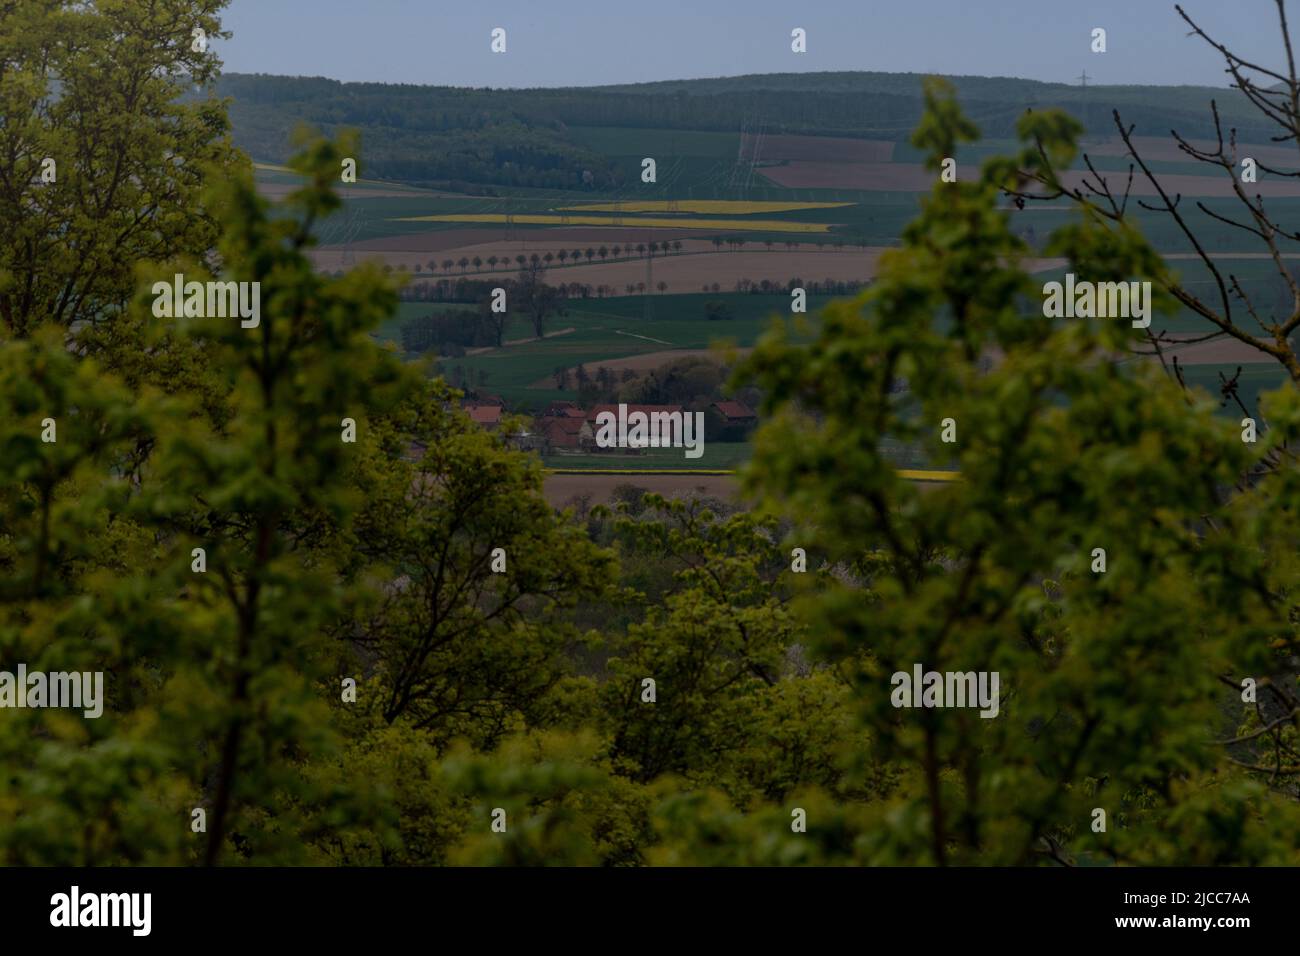 Ein Blick in die Landschaft um Burgwohldenberg, von der Aussichtsplattform sieht man weit über die Felder bis zum nächstem Wald Foto de stock